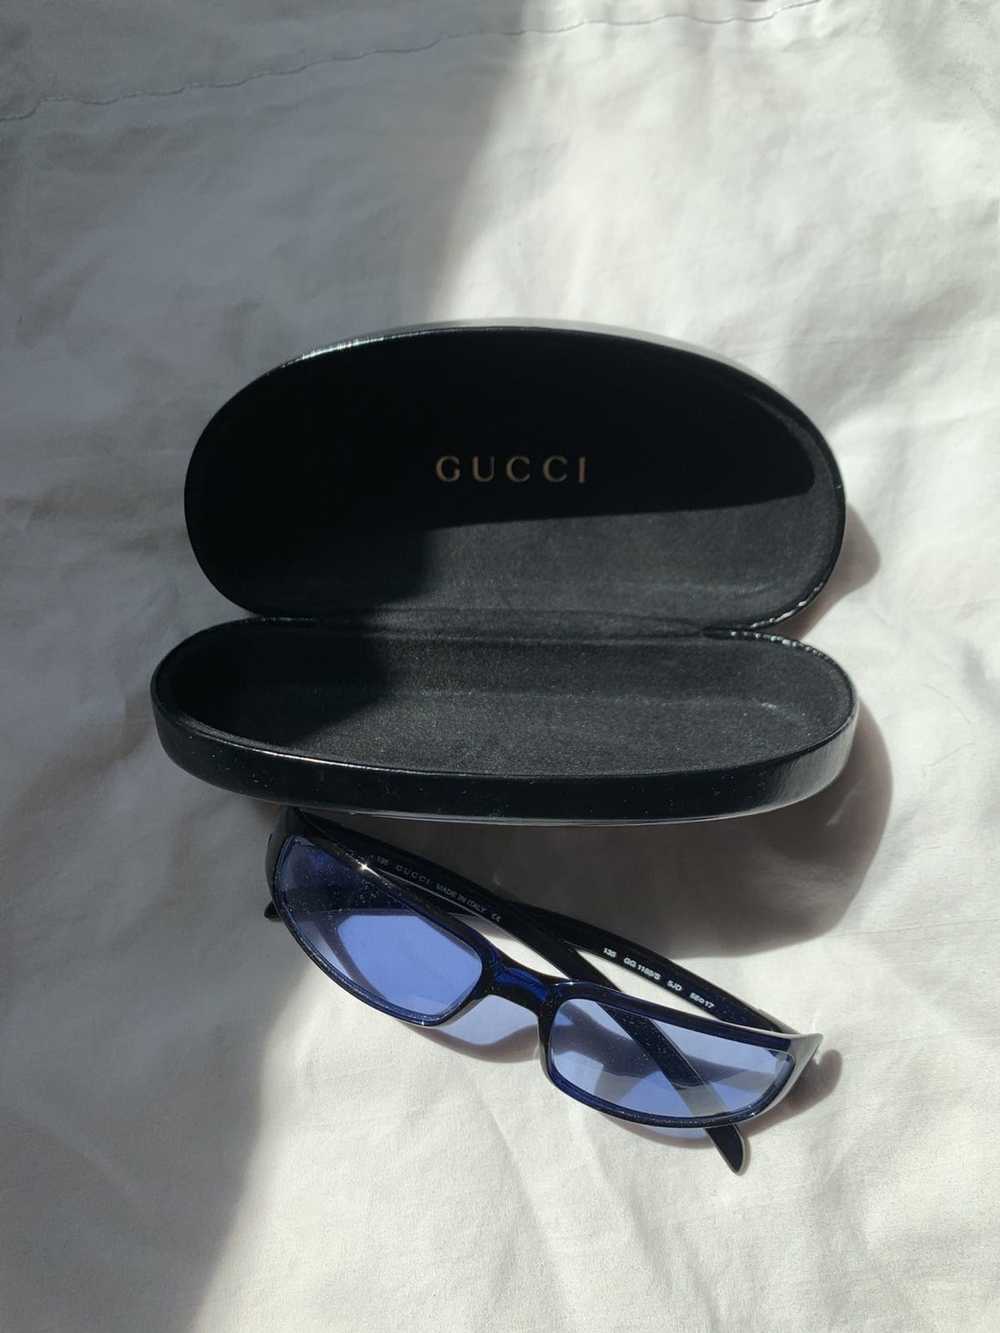 Gucci Vintage Gucci Sunglasses - image 3